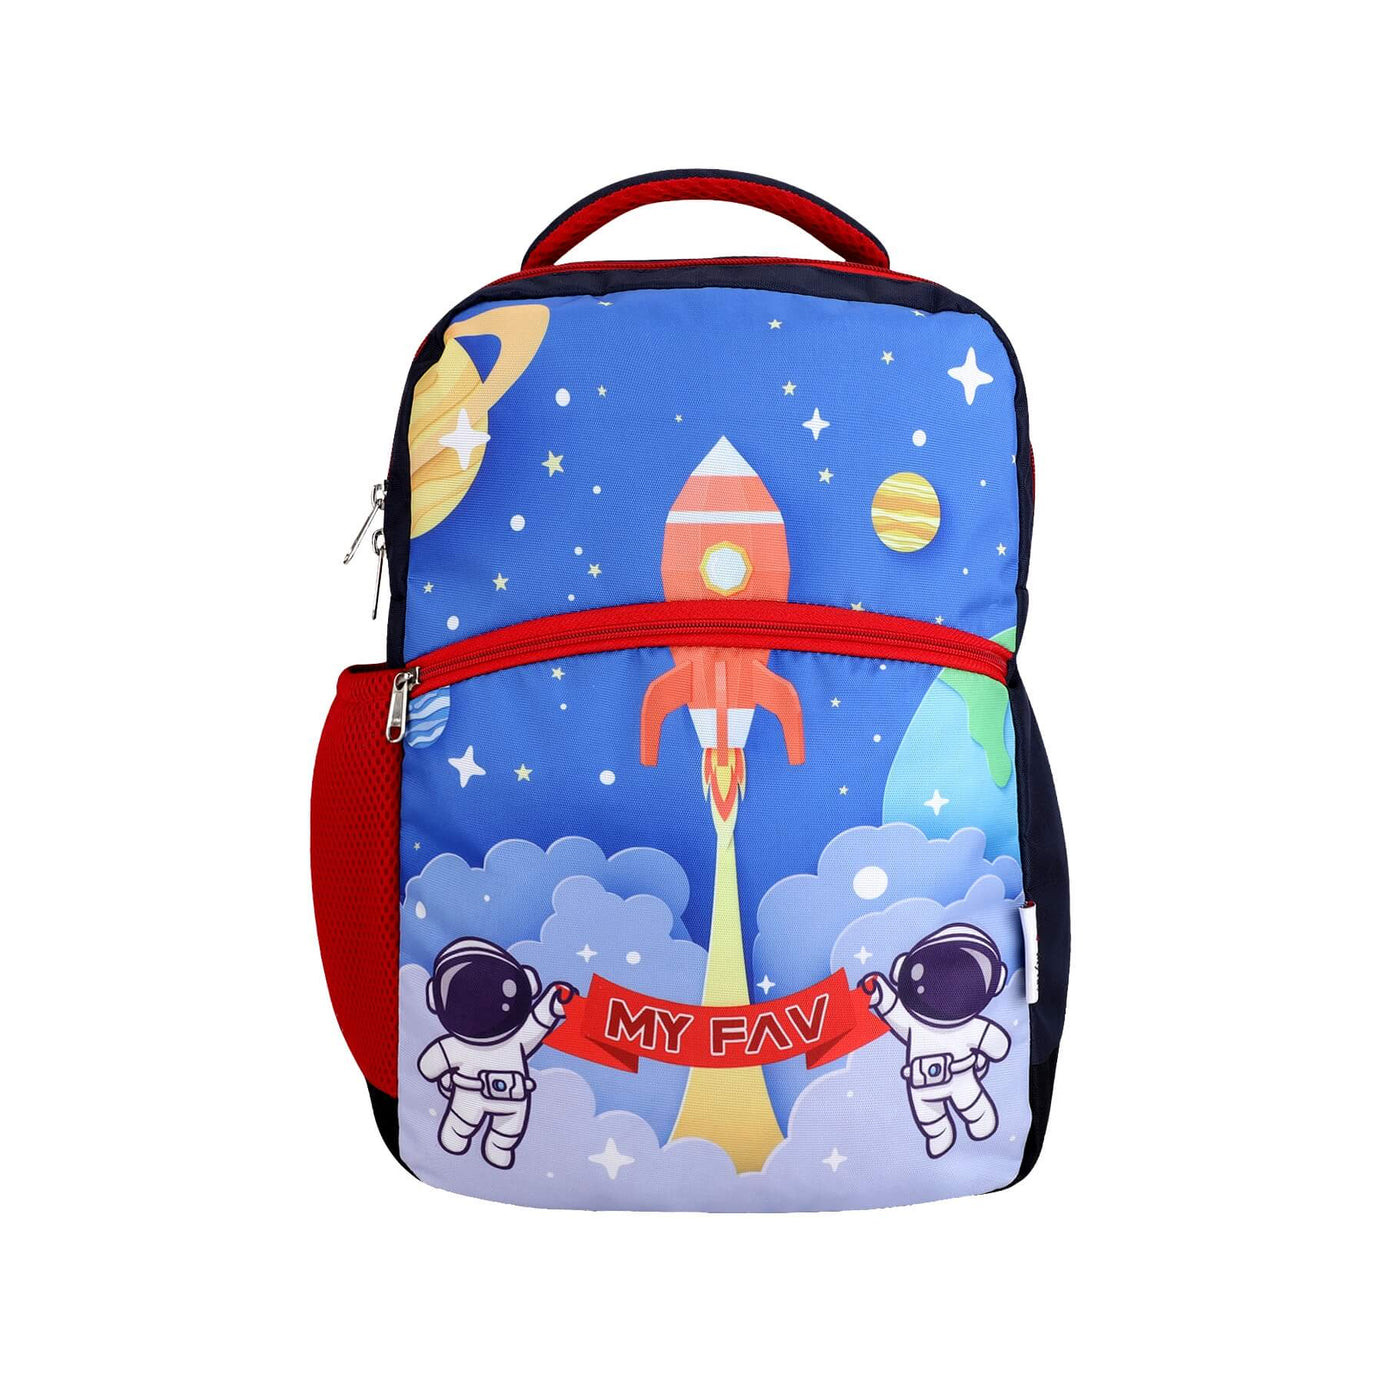 My Fav Cute Galaxy Kids School Bag For Girls/Boys, School, Casual, Picnic, Nursery-(2 to 10 year Old Kid)